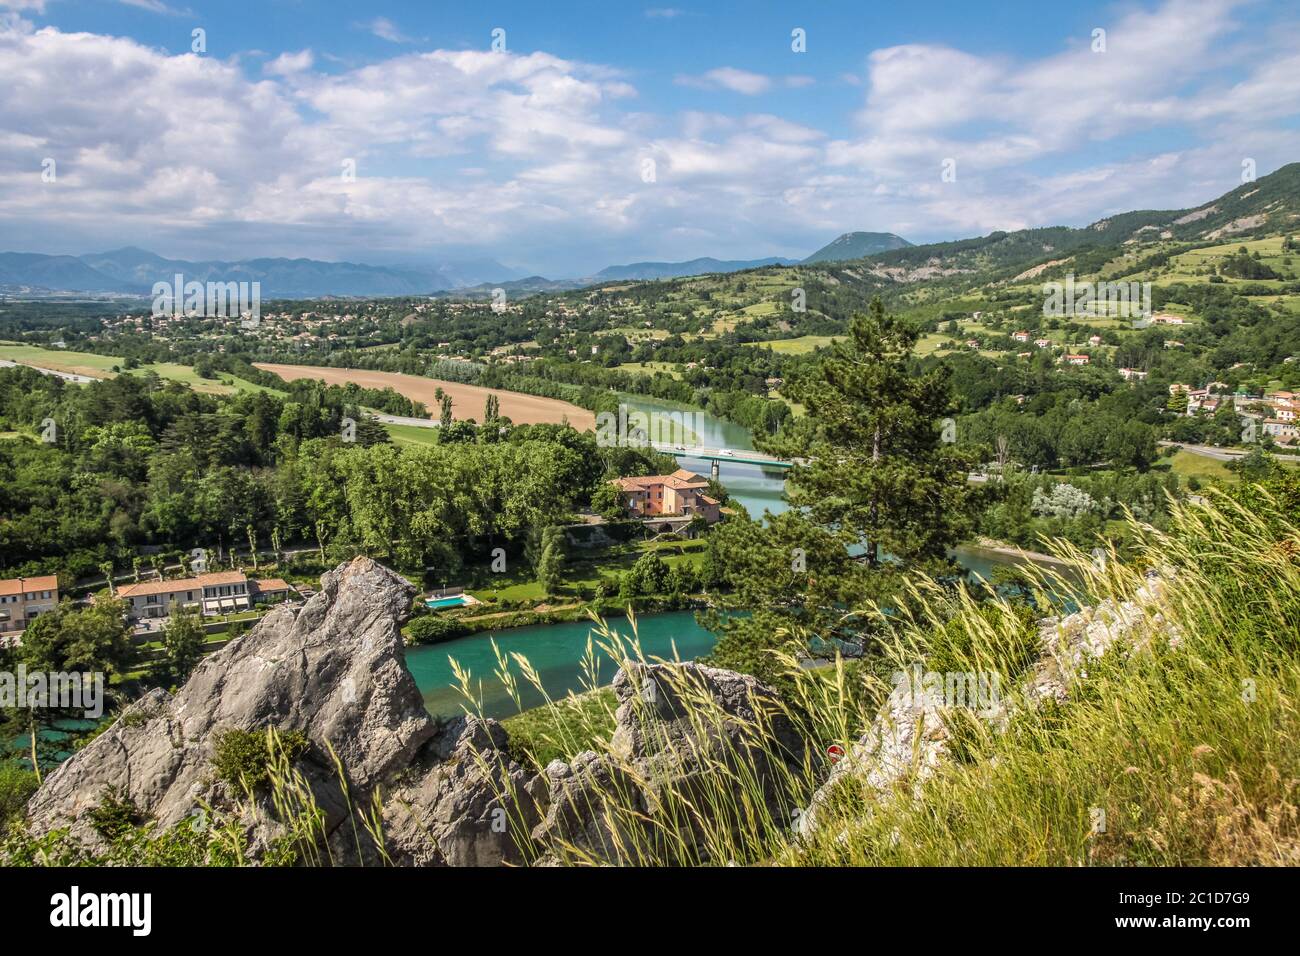 Vista del río Durance cerca del pueblo de Sisteron, Provenza, Francia Foto de stock